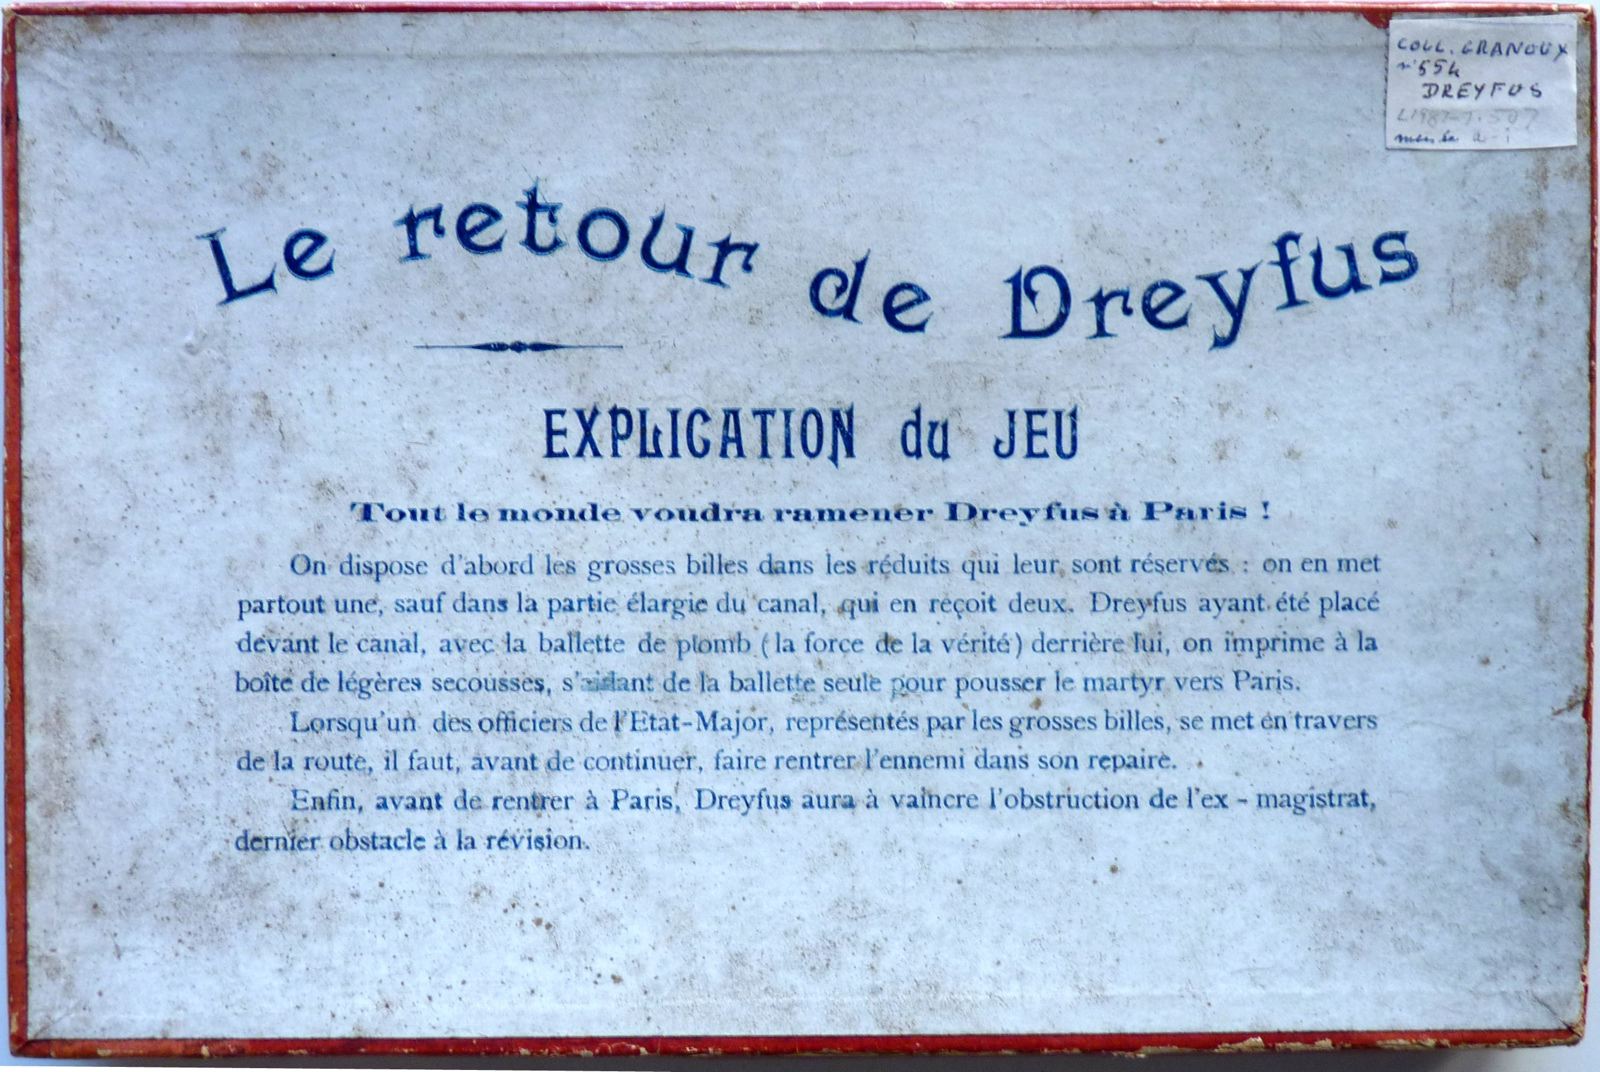 Le retour de Dreyfus